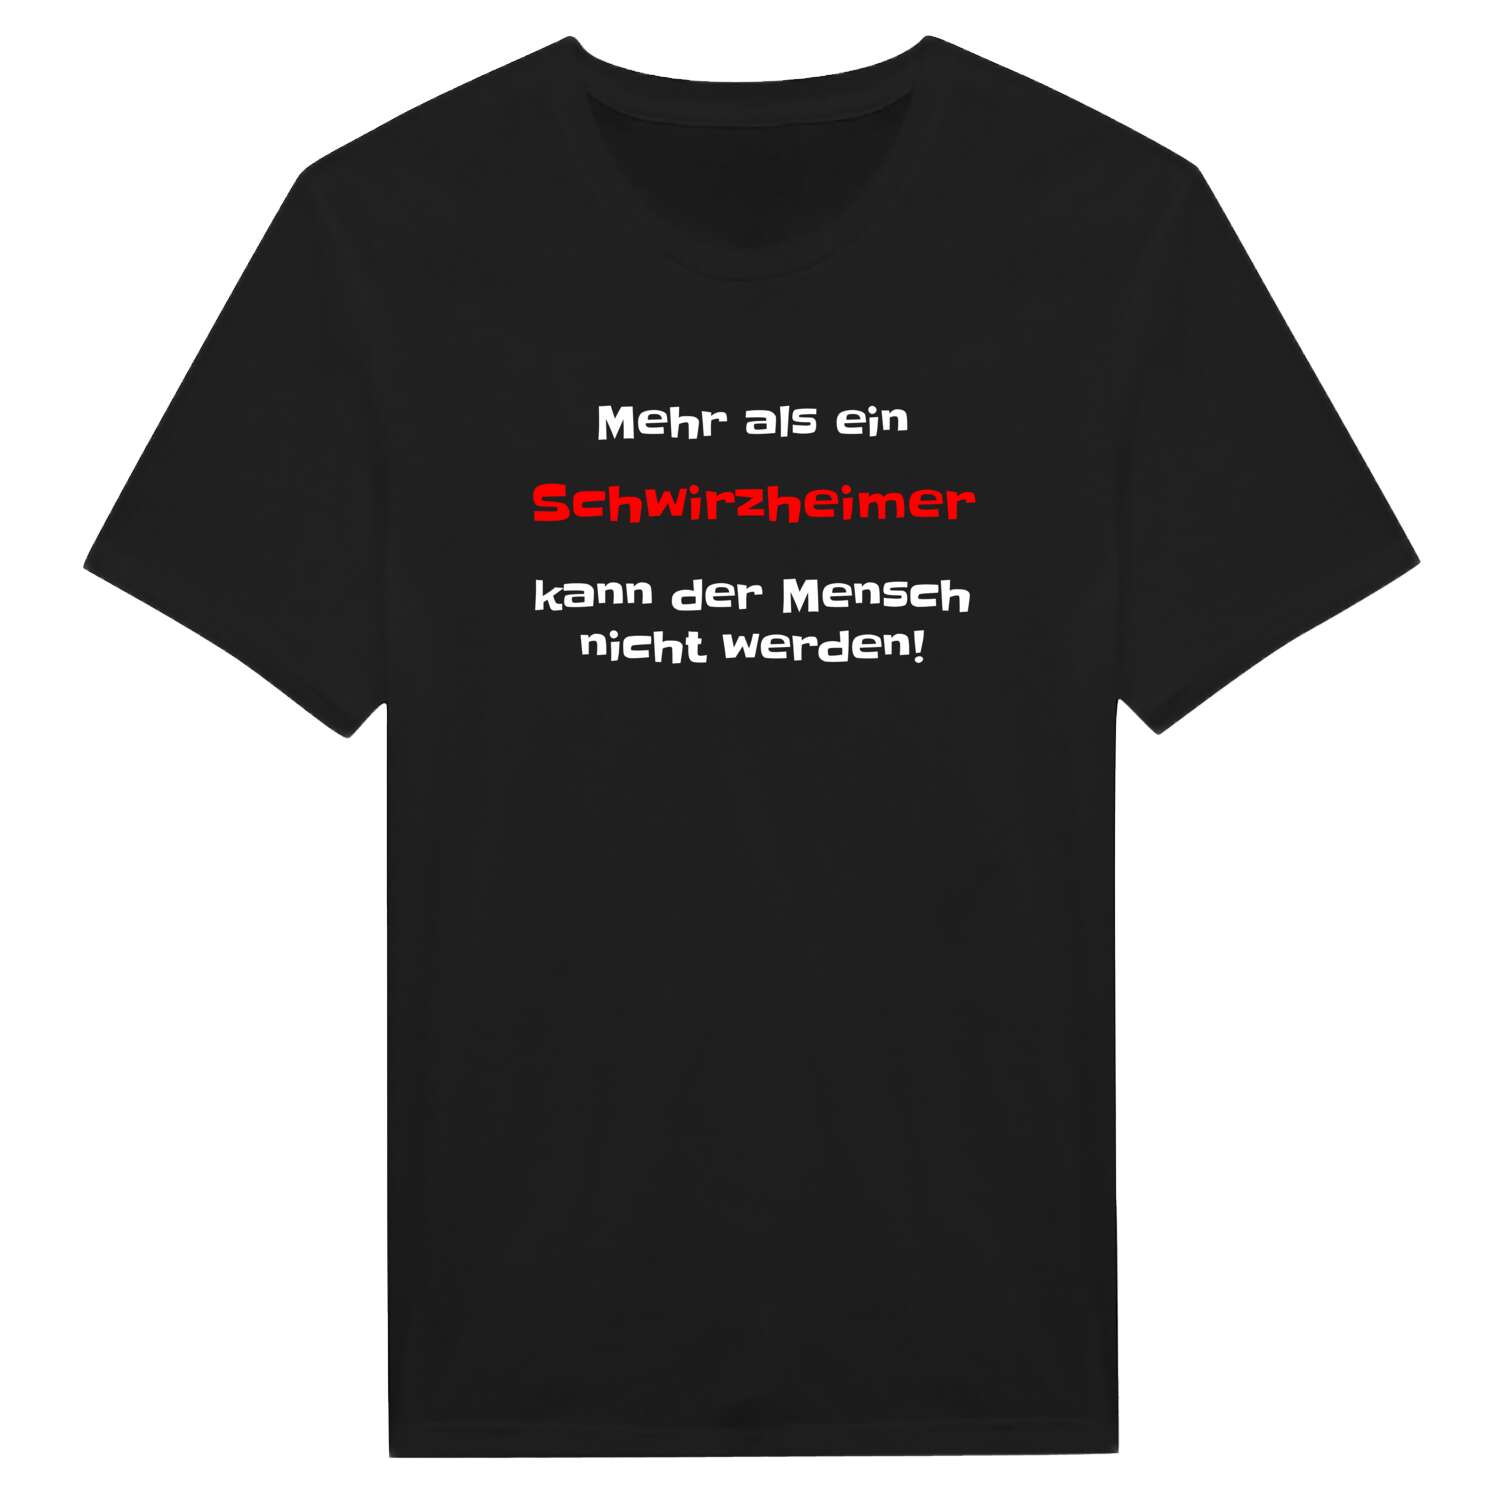 Schwirzheim T-Shirt »Mehr als ein«